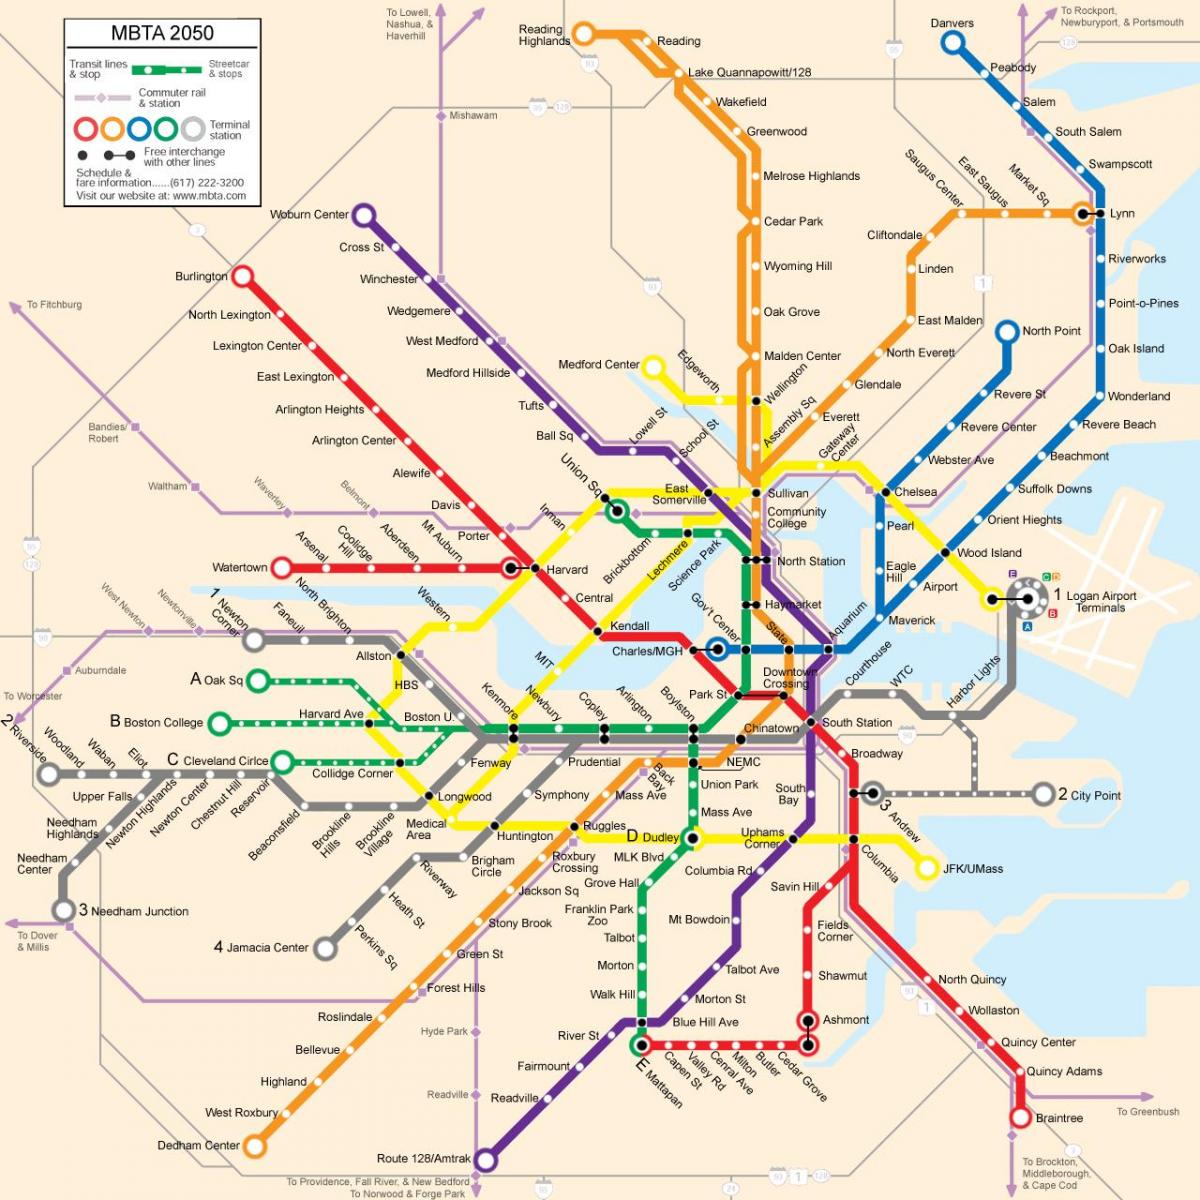 Boston garraio publikoaren mapa